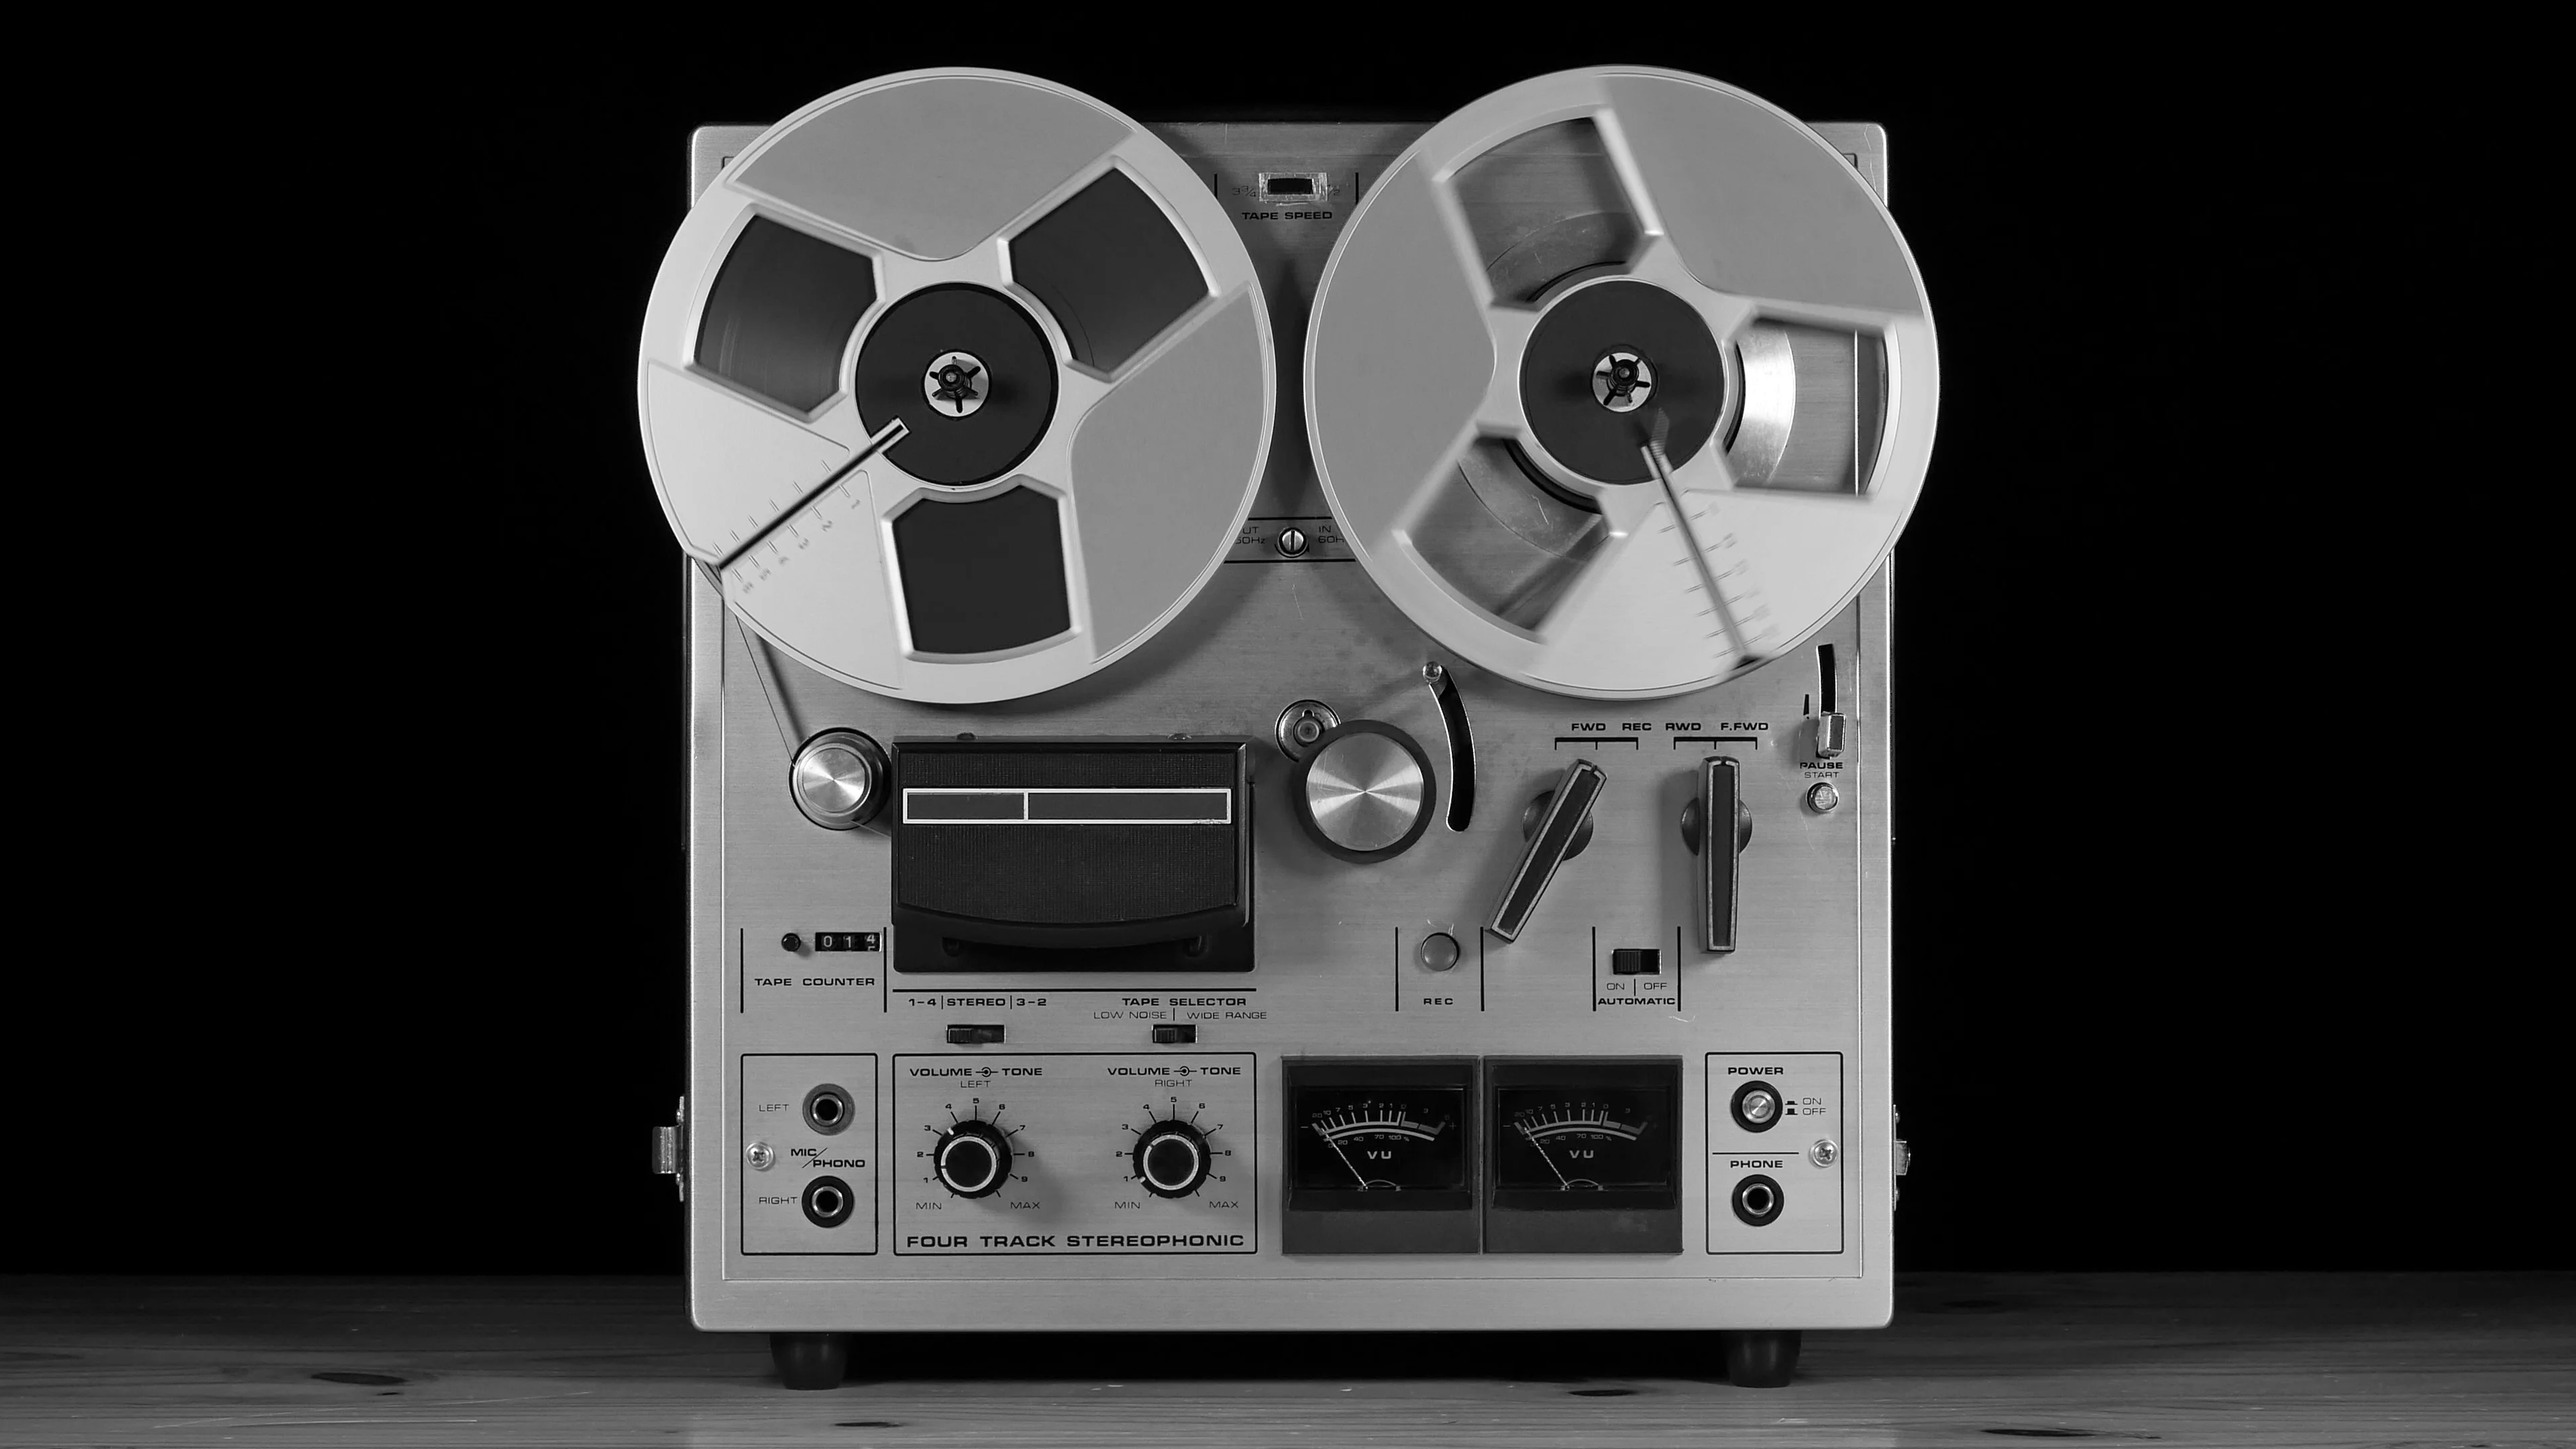 https://images.pond5.com/vintage-reel-reel-tape-recorder-footage-086559308_prevstill.jpeg